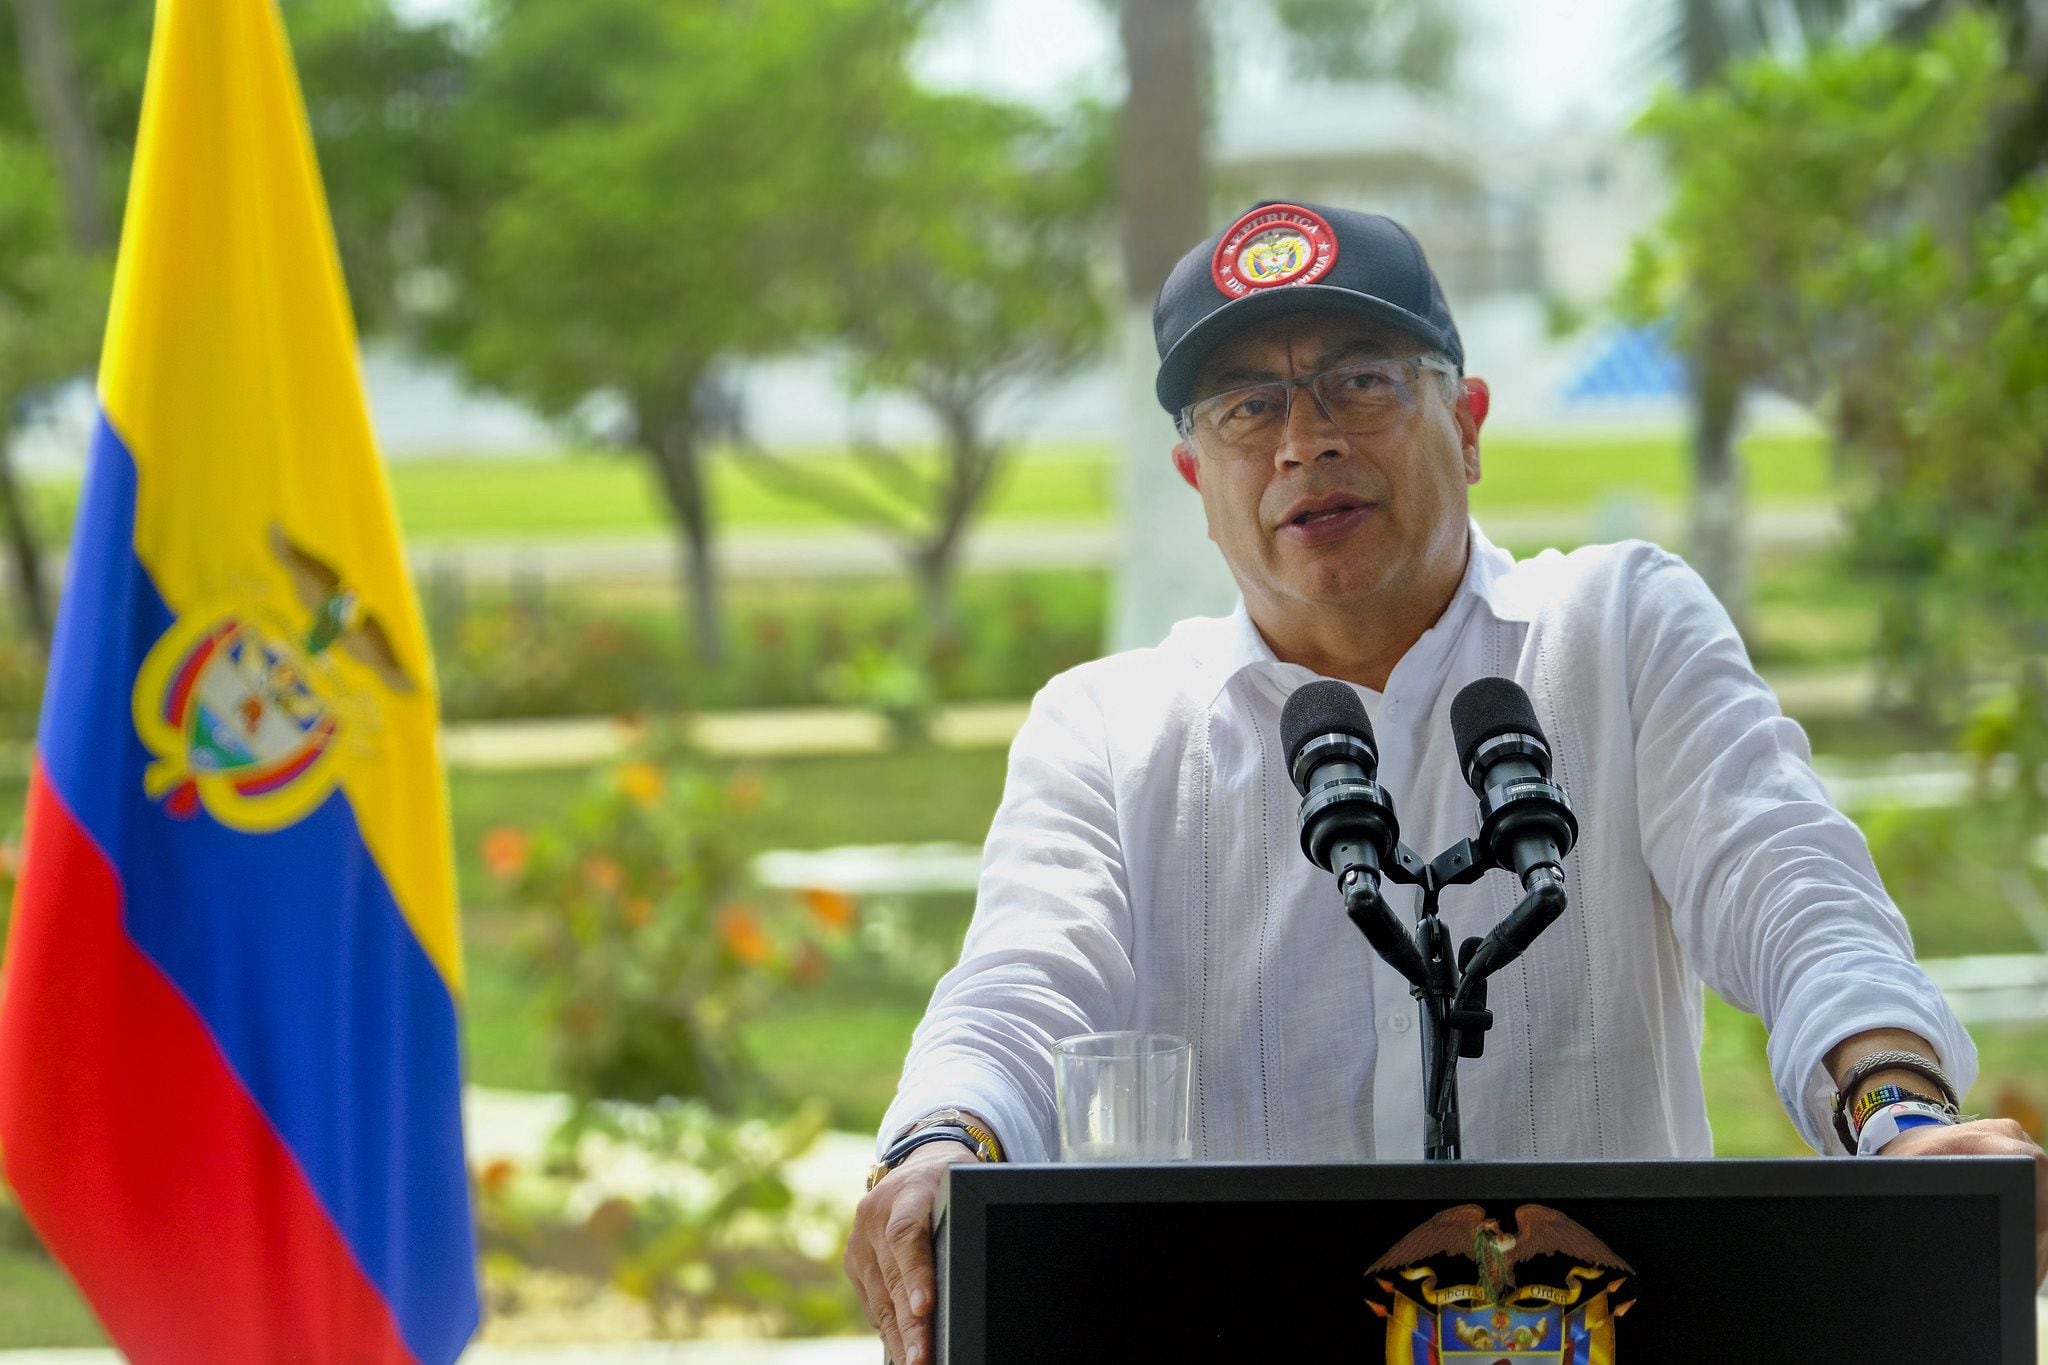 El presidente Gustavo Petro fue objeto de toda clase de polémicas en la jornada del miércoles 8 de mayo, por cuenta de sus declaraciones - crédito Presidencia